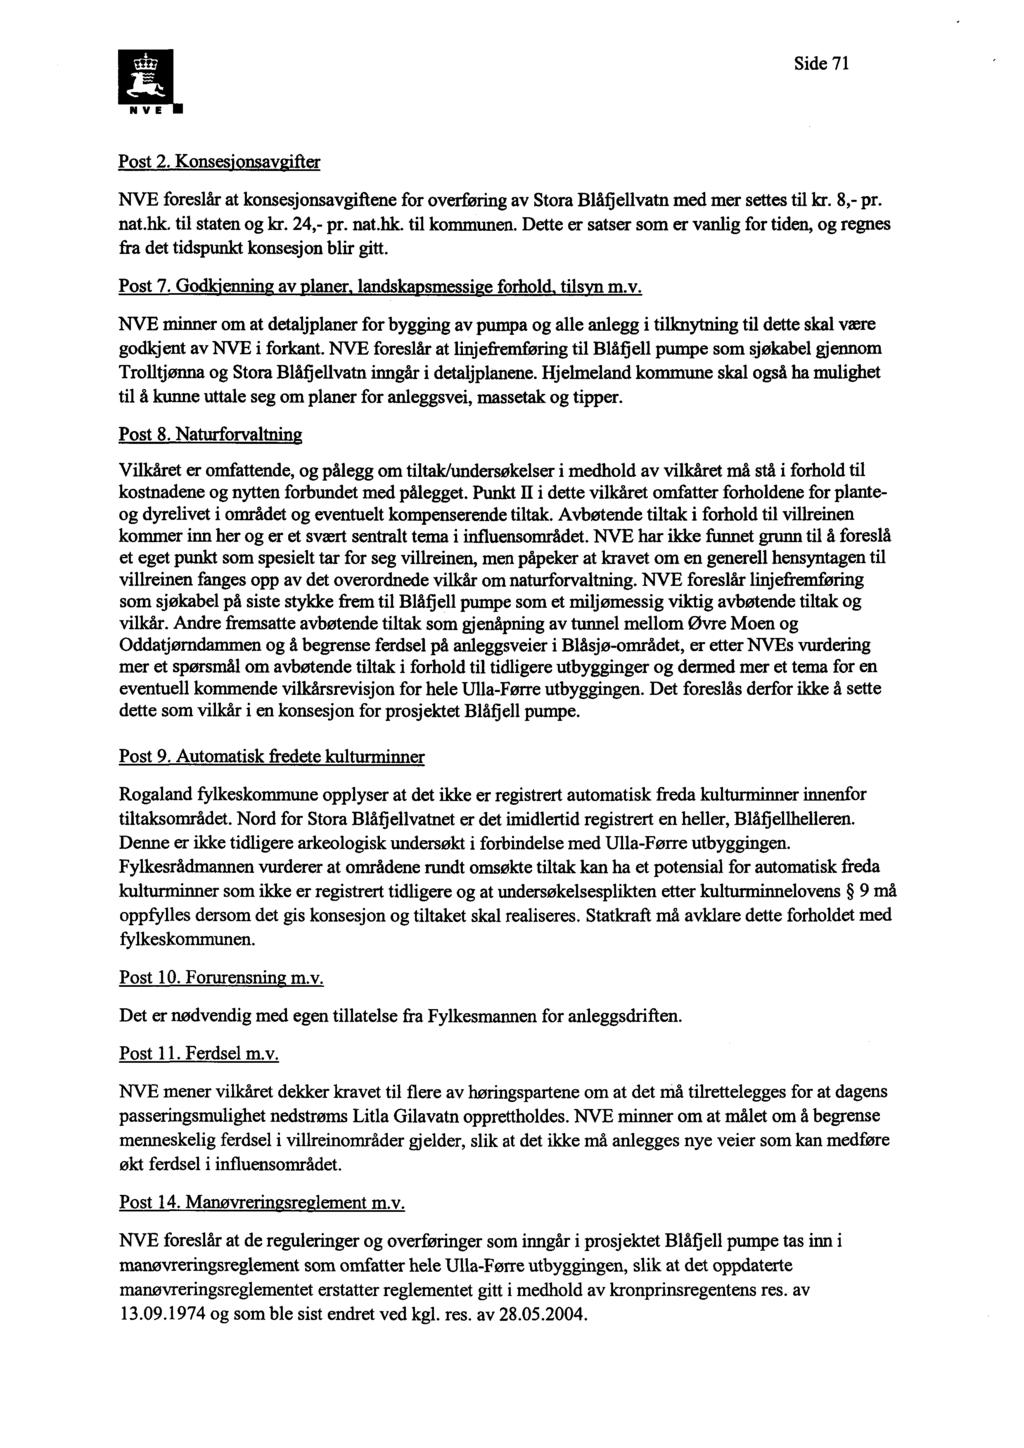 Side 71 Post 2. Konses av 'fter NVE foreslår at konsesjonsavgiftene for overføring av Stora Blåfiellvatn med mer settes til kr. 8,- pr. nat.hk. til staten og kr. 24,- pr. nat.hk. til kommunen.